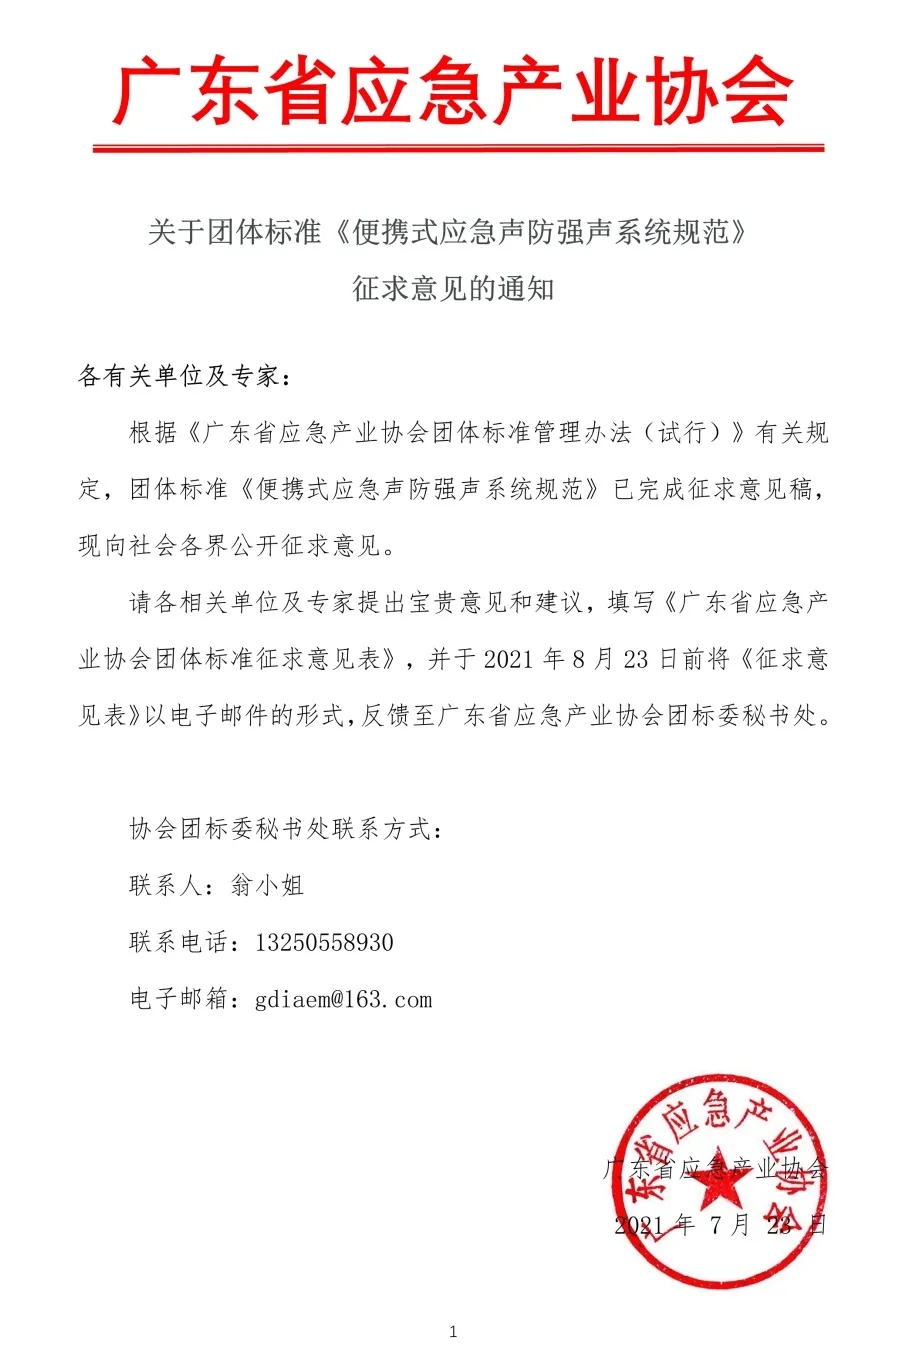 广东省应急产业协会关于团体标准《便携式应急声防强声系统规范》征求意见的通知